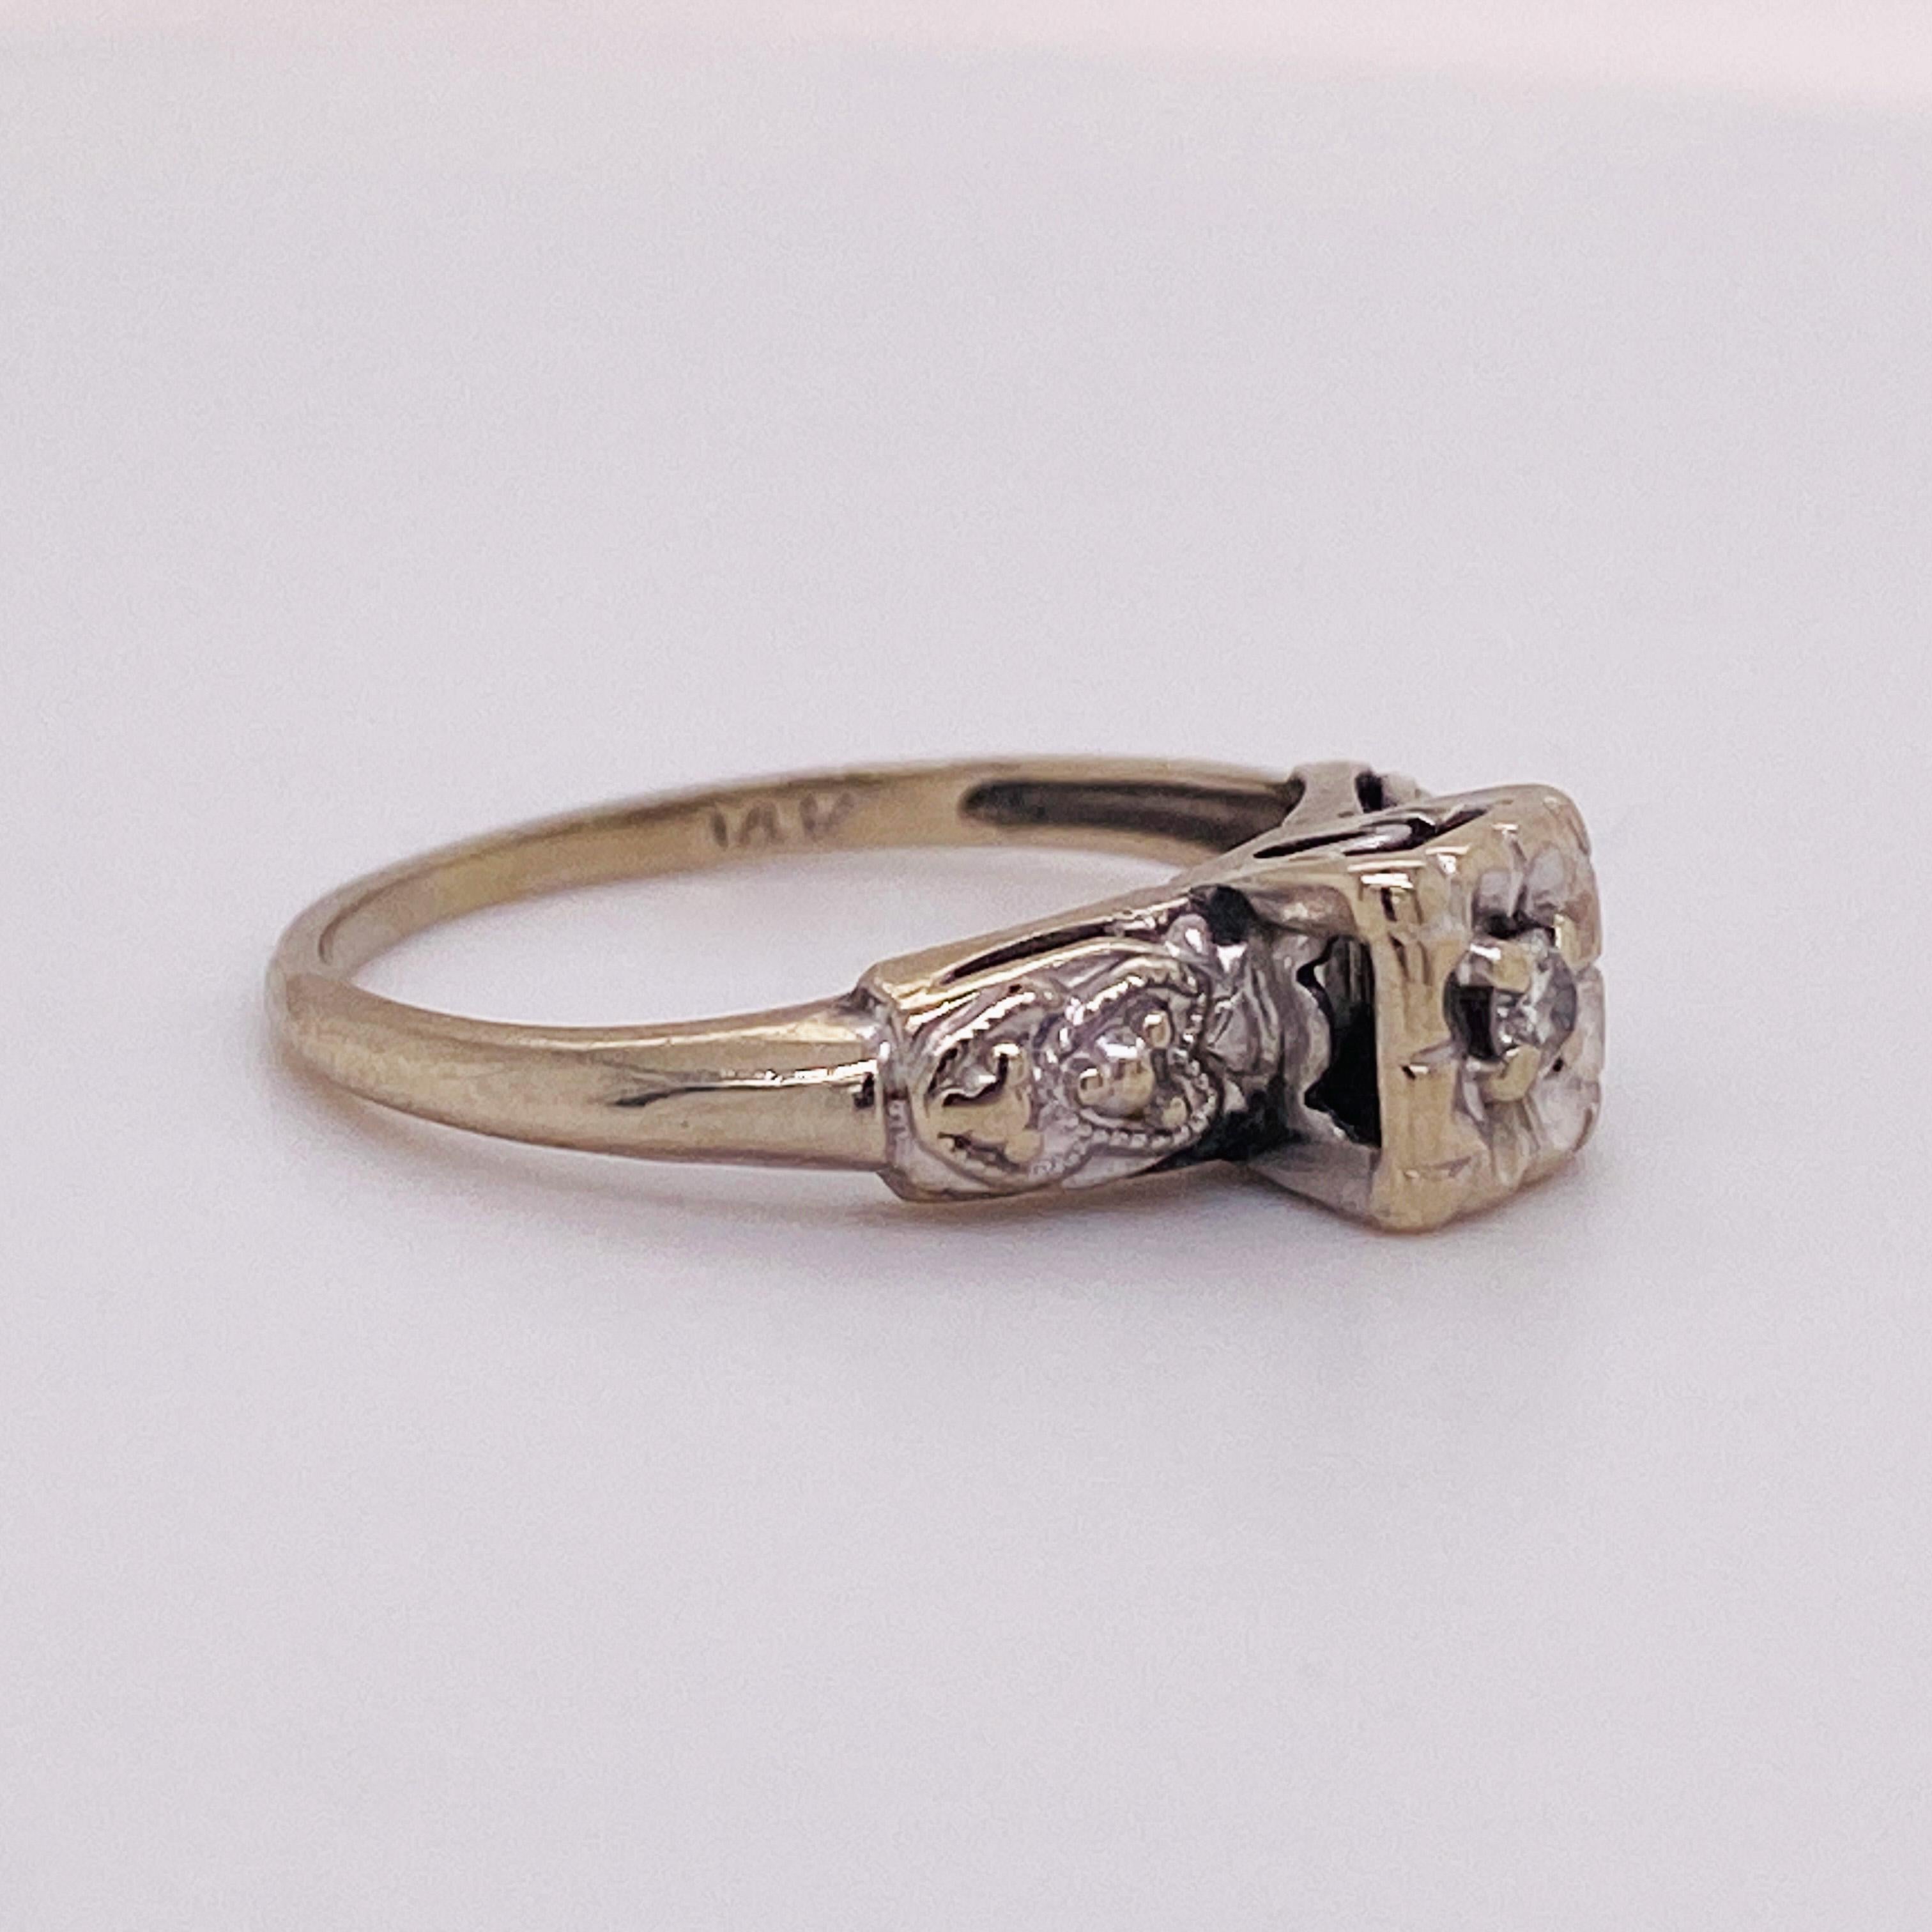 Dies ist ein Diamant-Verlobungsring, der CIRCA 1930 ist. Dieser Nachlass Ring hat eine wunderbare Geschichte und wurde von einer zierlichen Frau tragen eine Größe 4,75 getragen. Dieser Verlobungsring besteht aus massivem 14-karätigem Weißgold mit